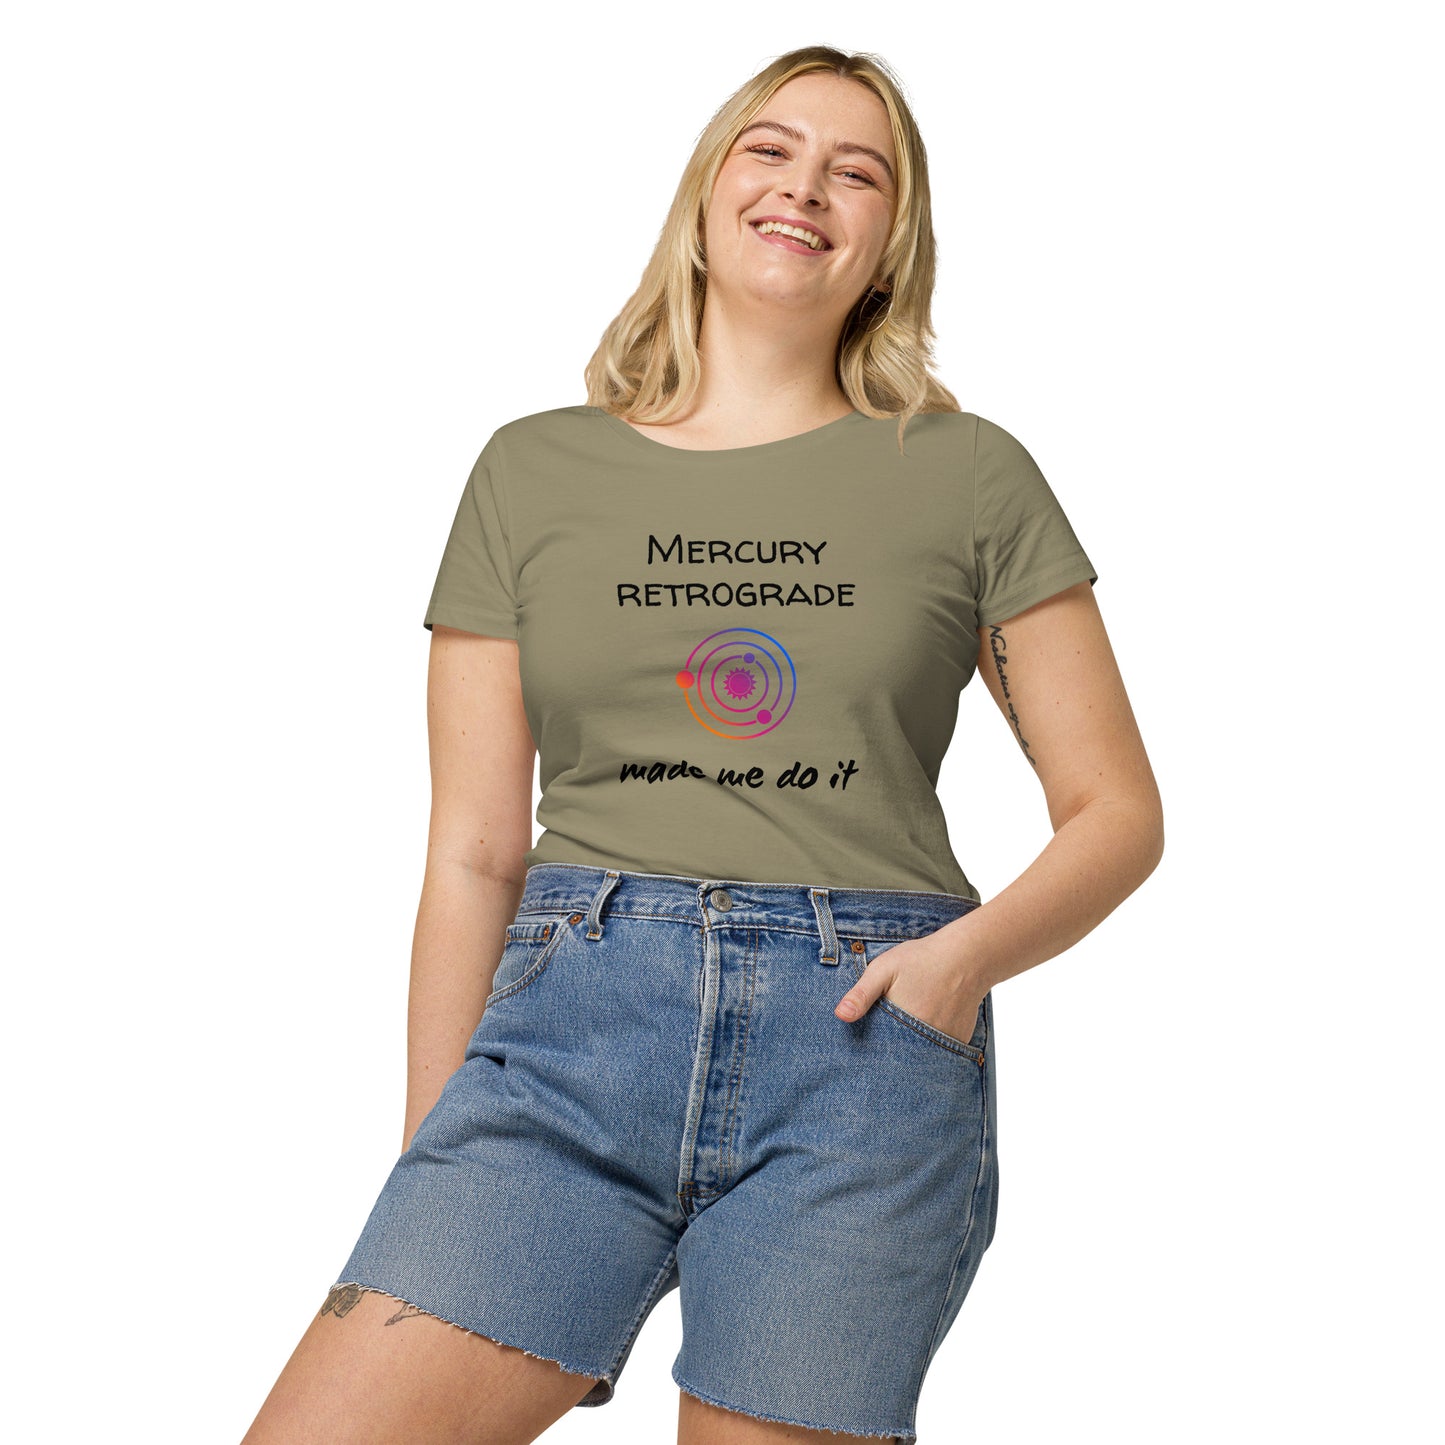 Mercury retrograde made me do it, t-shirt